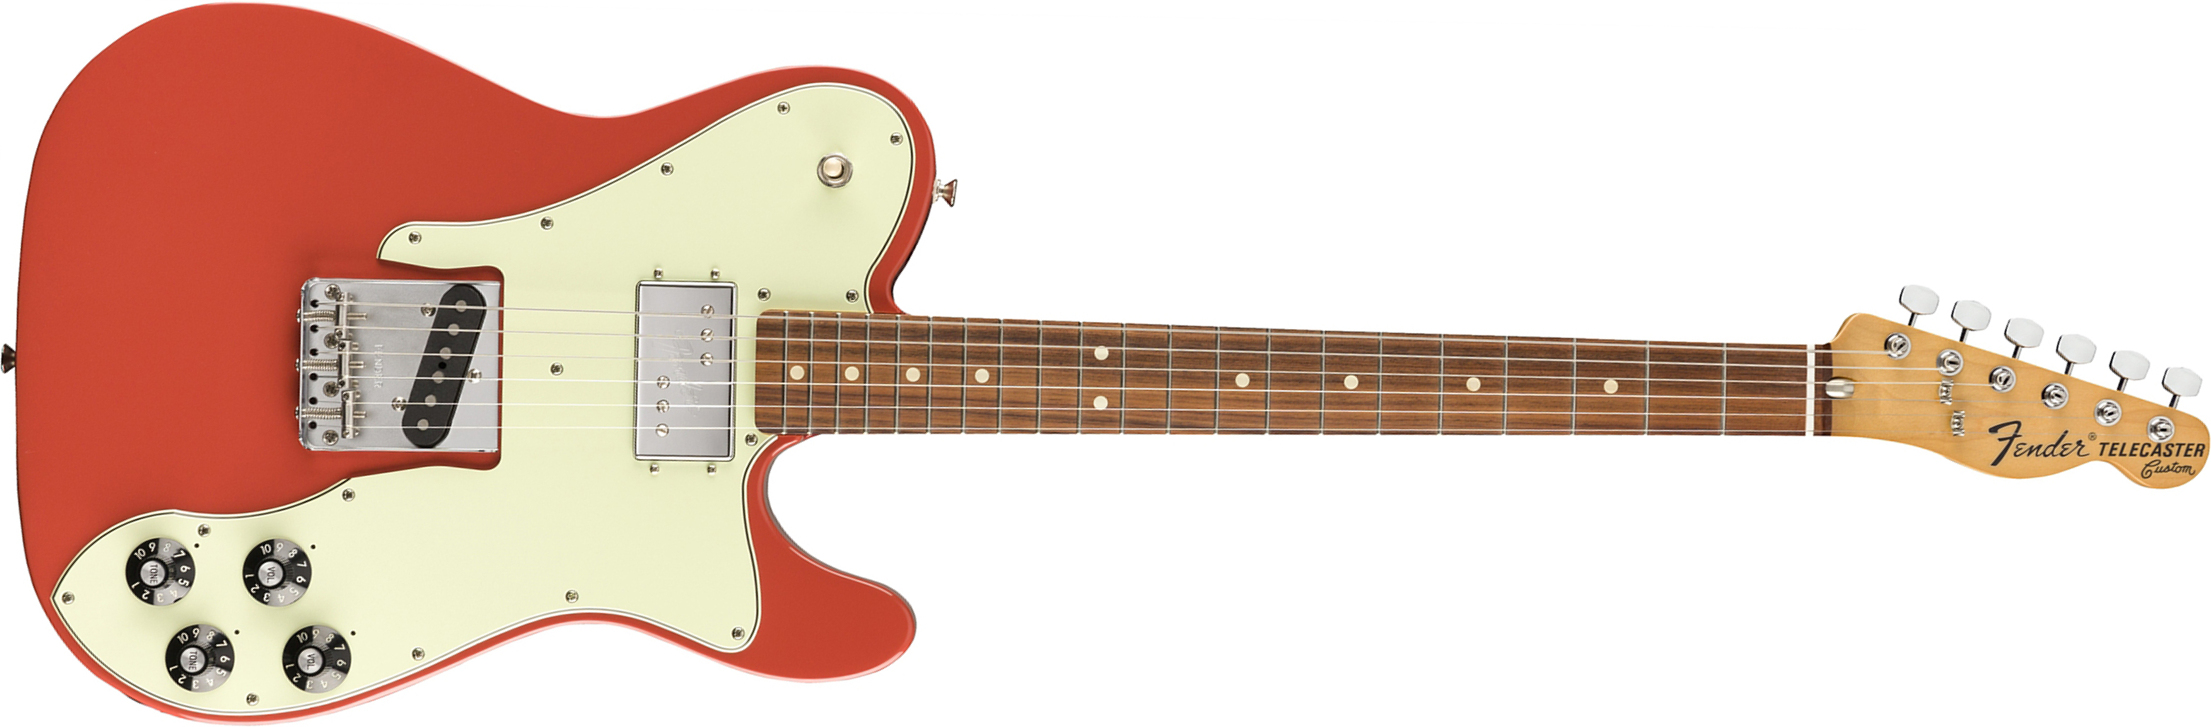 Fender Tele 70s Custom Vintera Vintage Mex Hh Pf - Fiesta Red - Televorm elektrische gitaar - Main picture